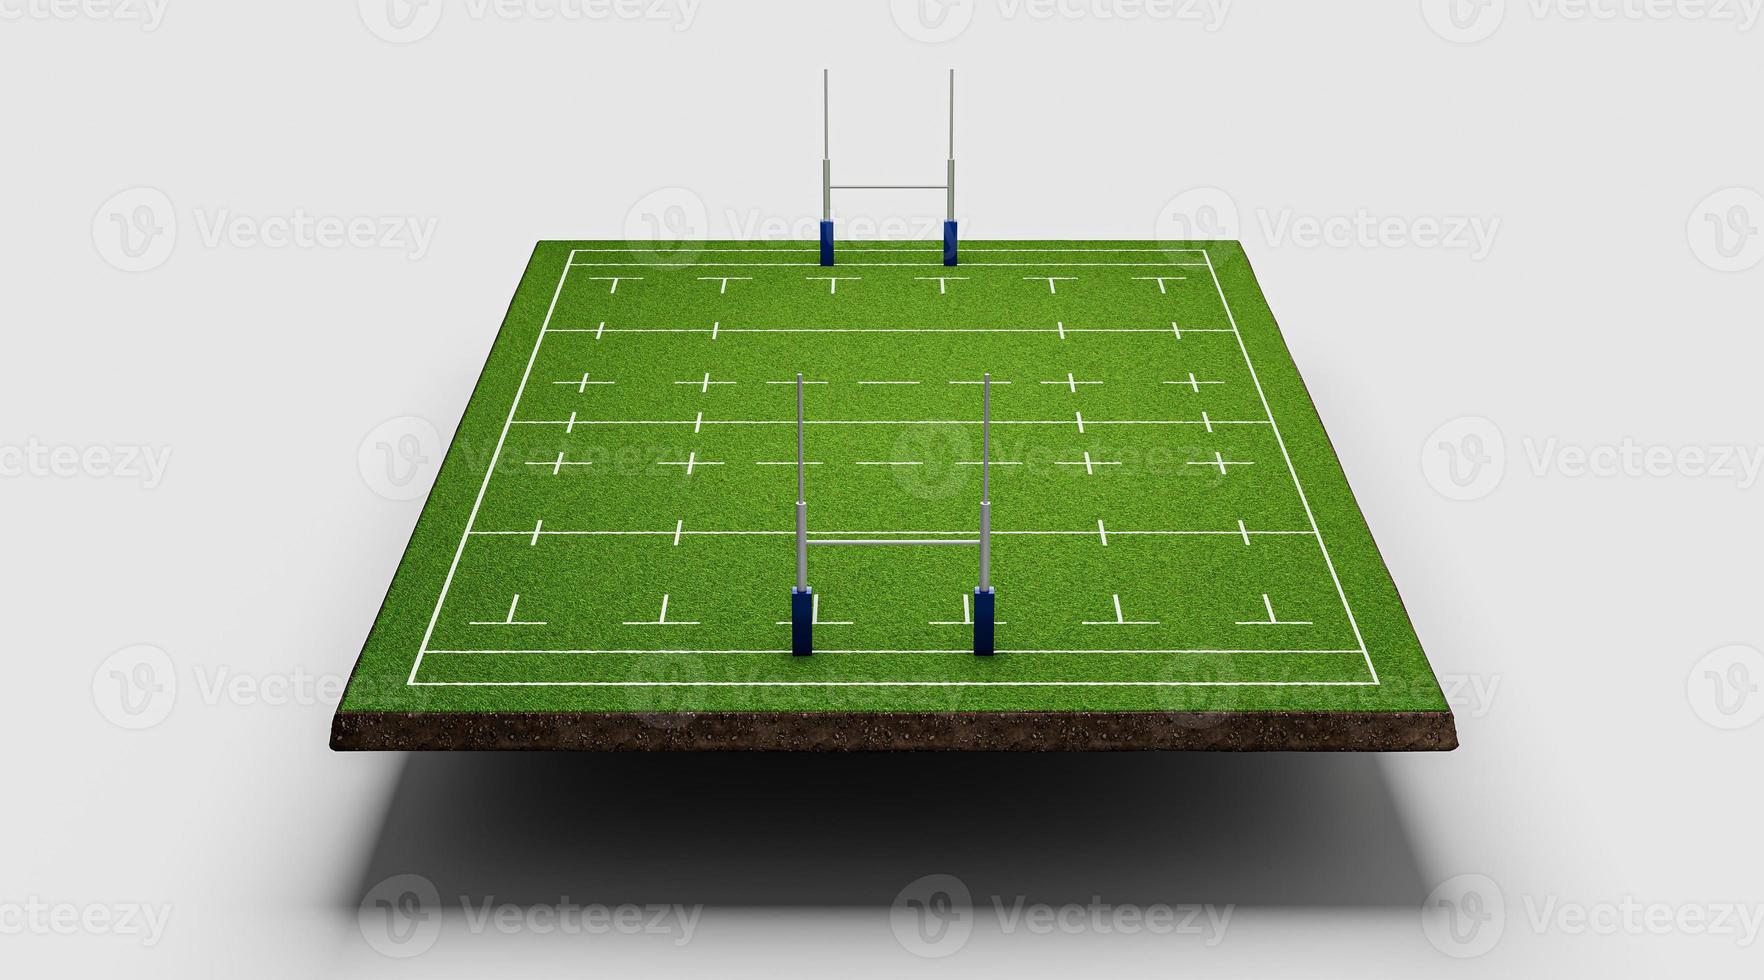 amerikansk fotbollsplan marken tvärsnitt med grön rugby stadion gräsplan 3d illustration foto